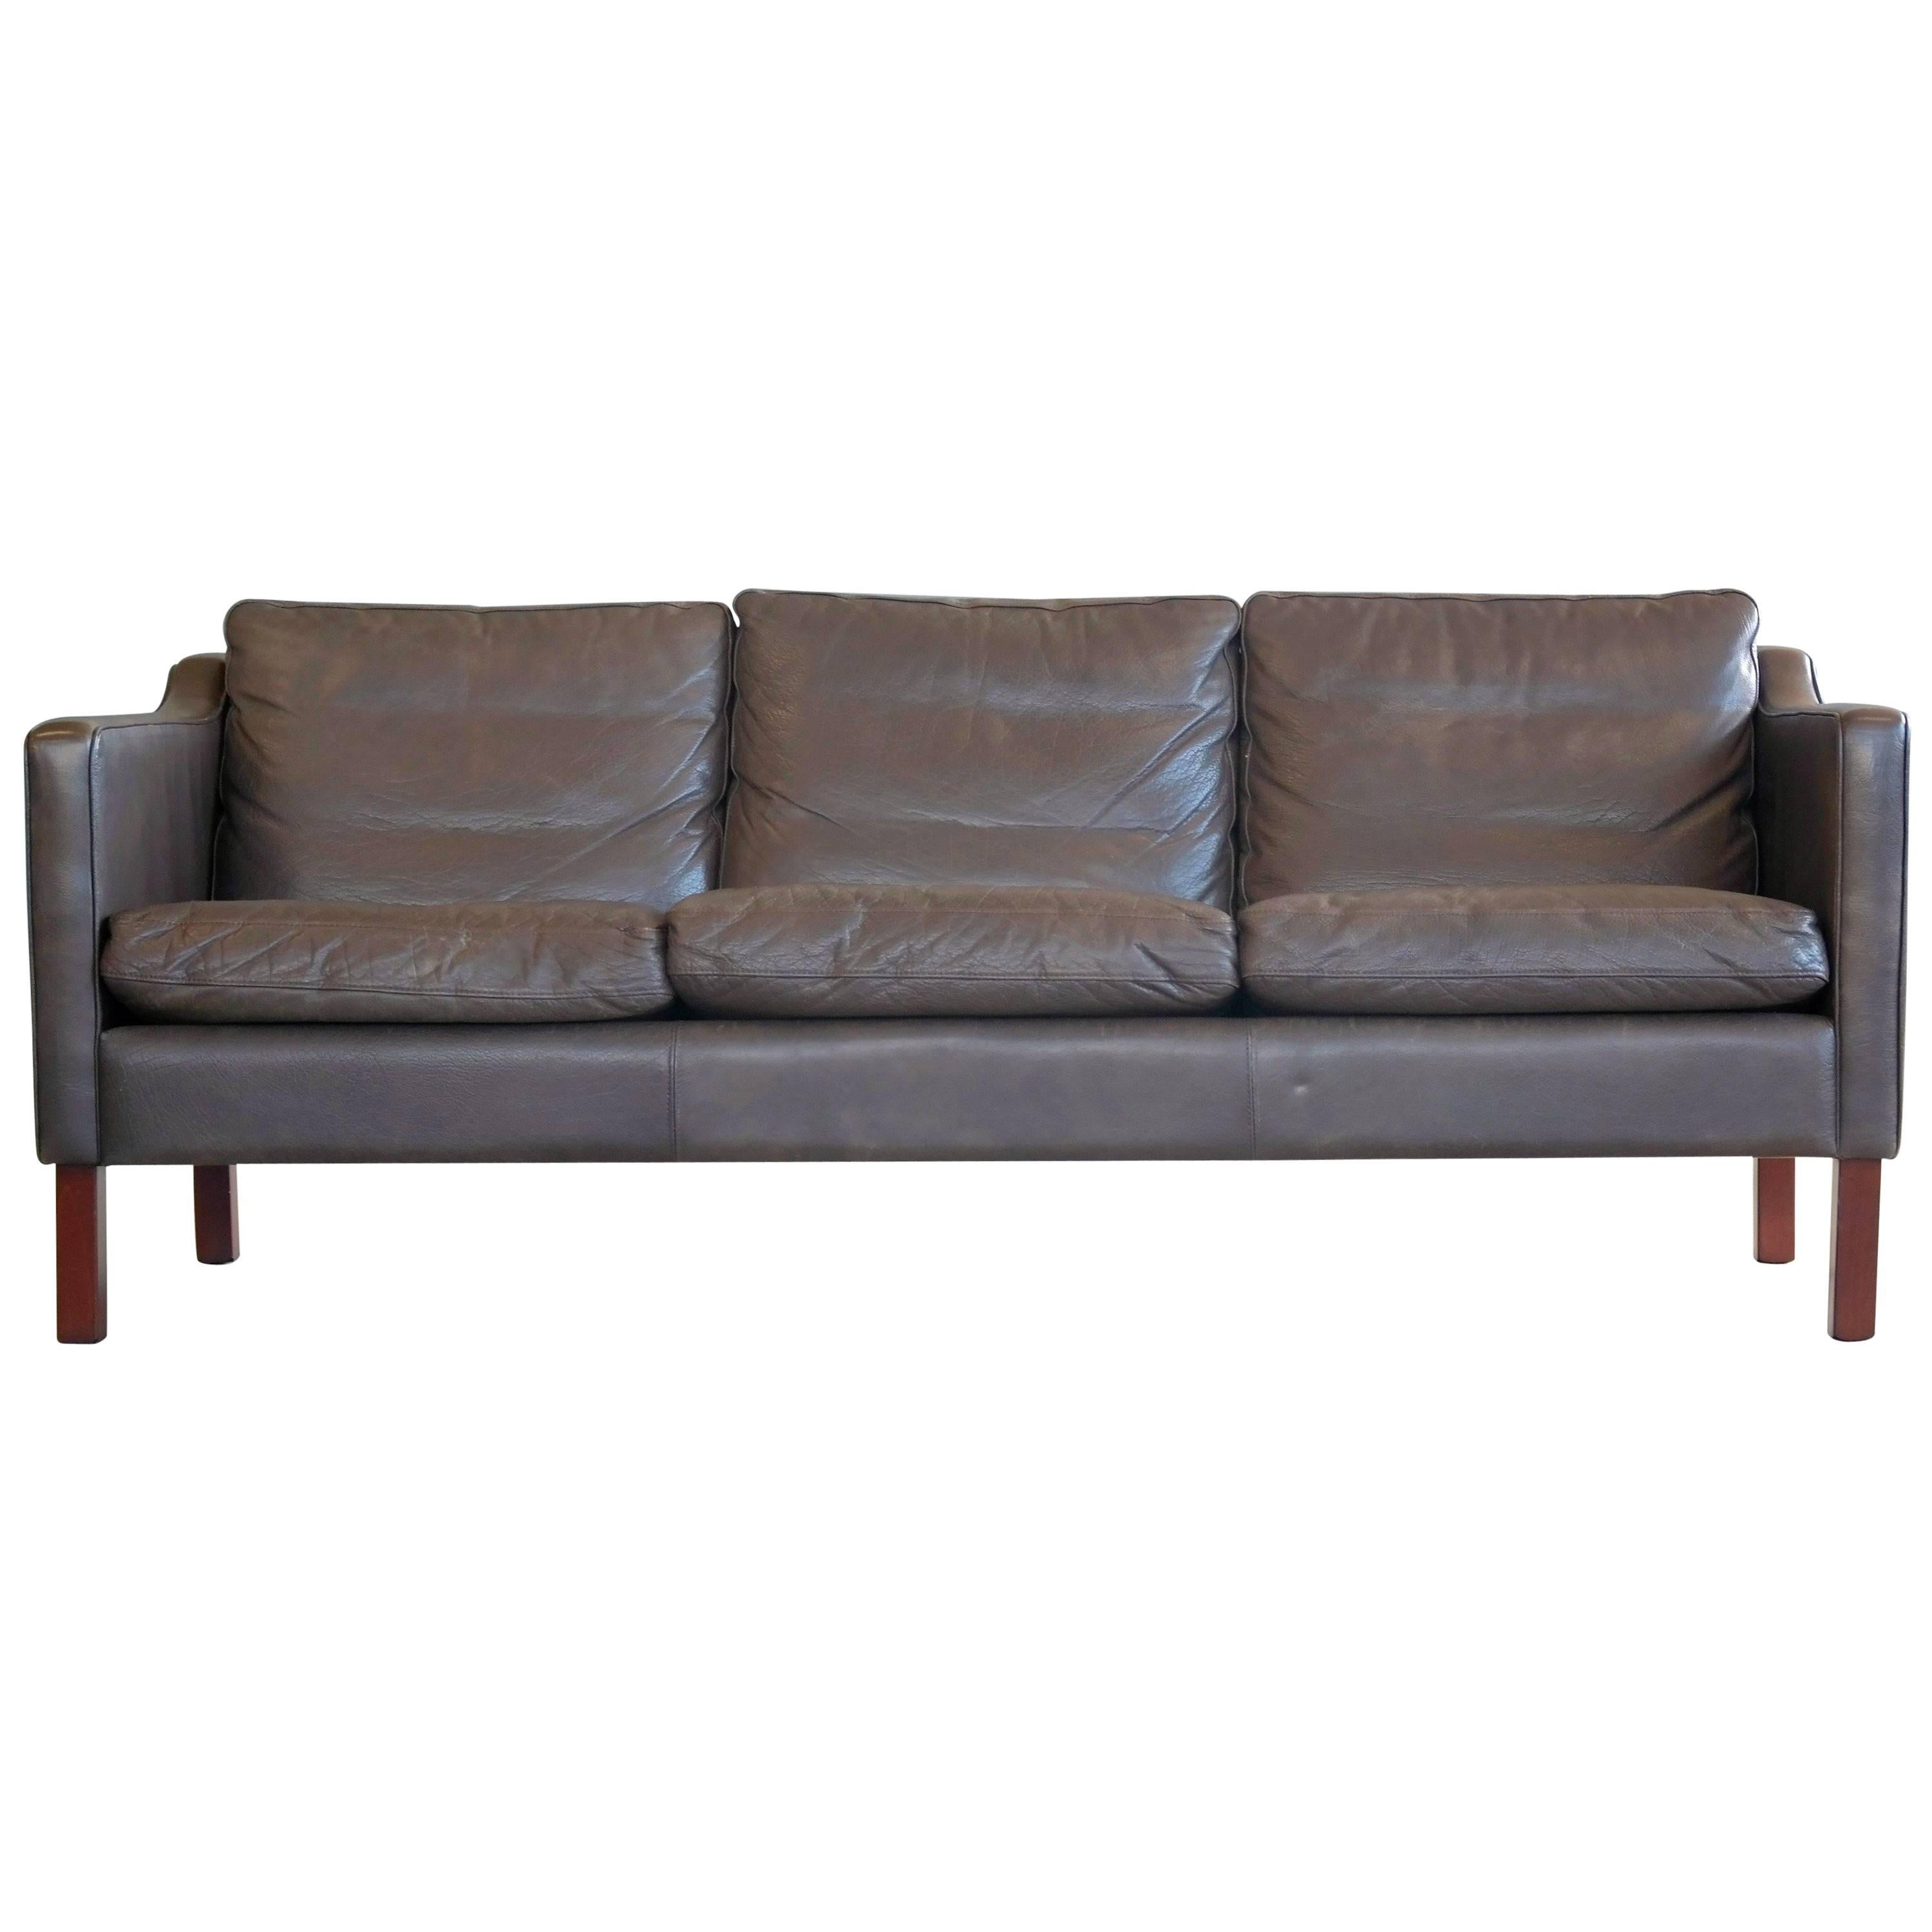 Børge Mogensen Style Sofa in Dark Espresso Down Filled Leather by Mogens Hansen